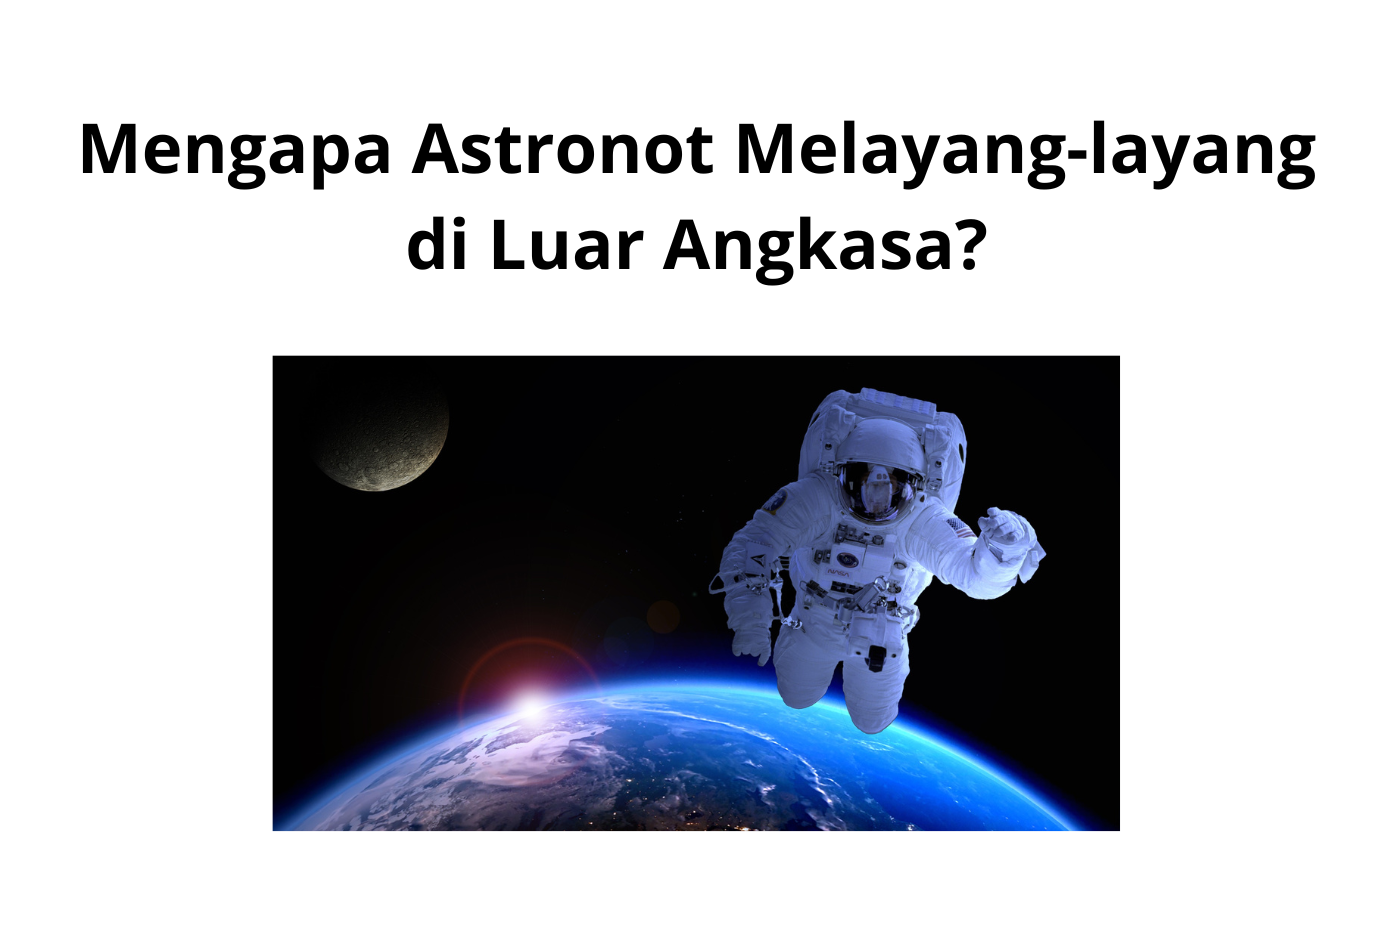 Mengapa Astronot Melayang-layang di Luar Angkasa?